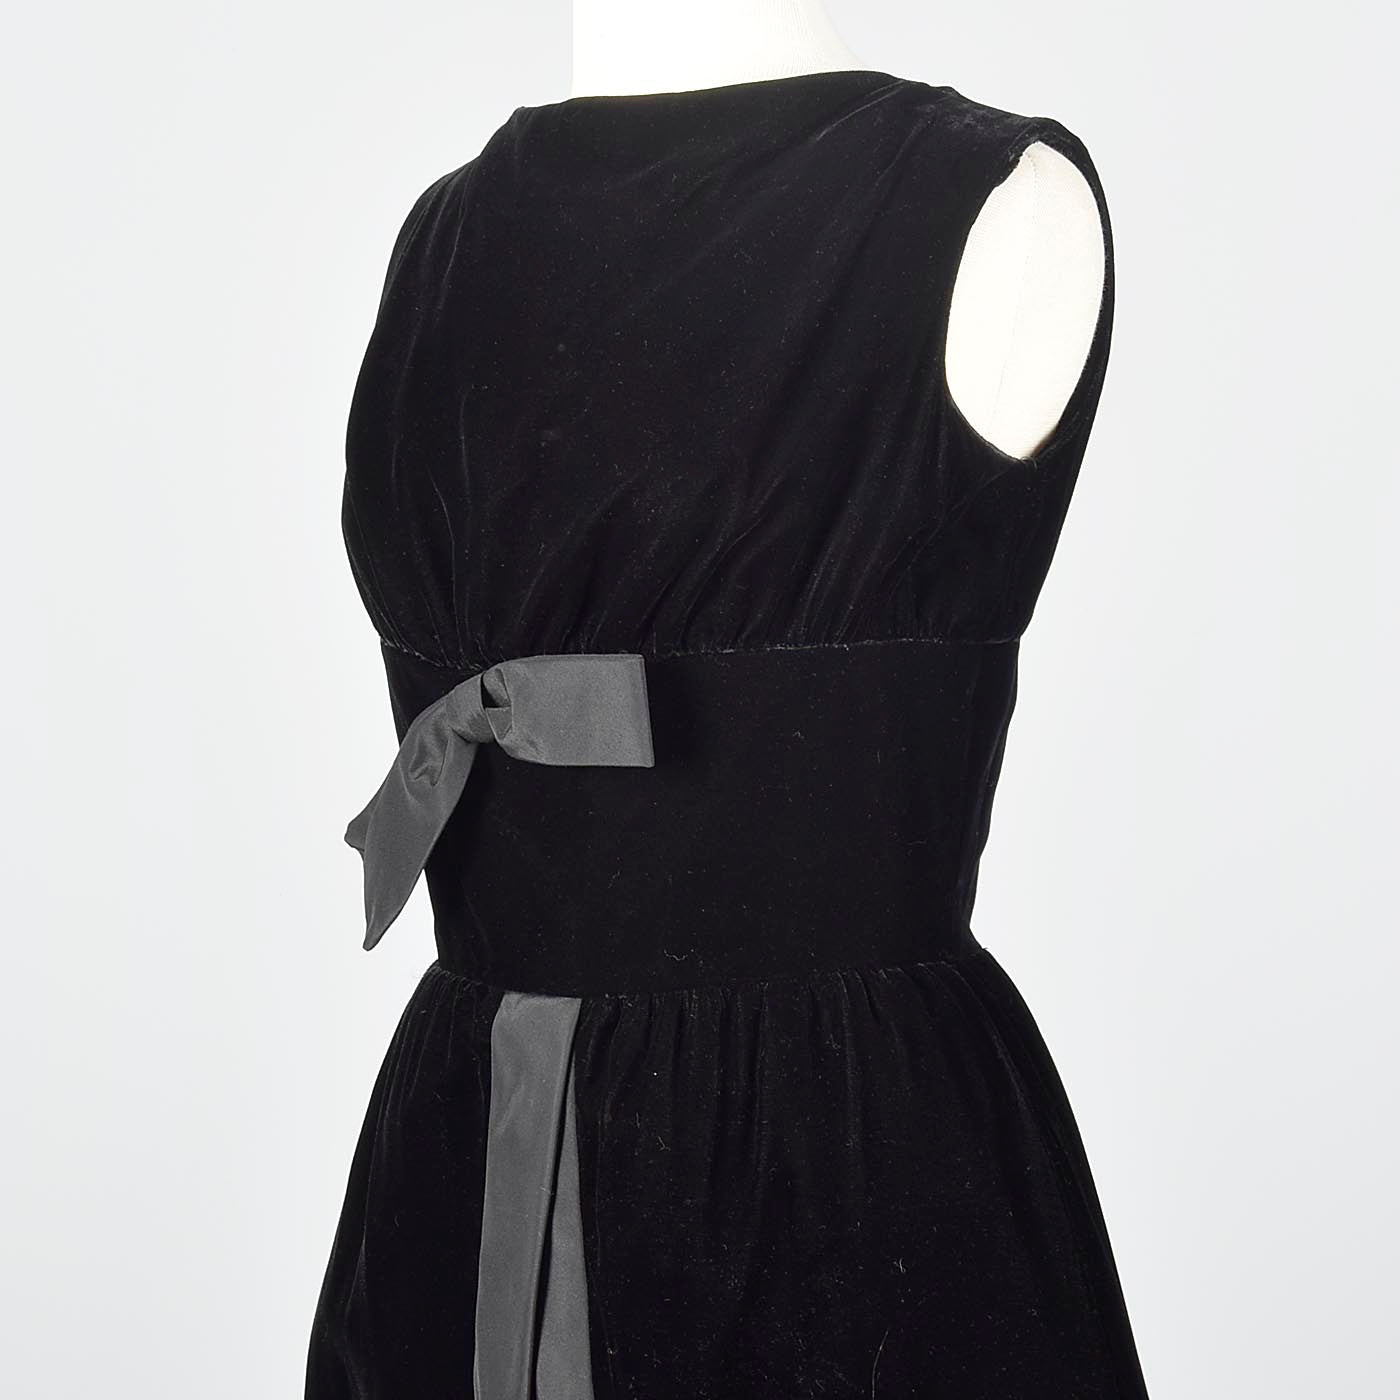 1950s Suzy Perette Little Black Velvet Dress with Dramatic Overskirt